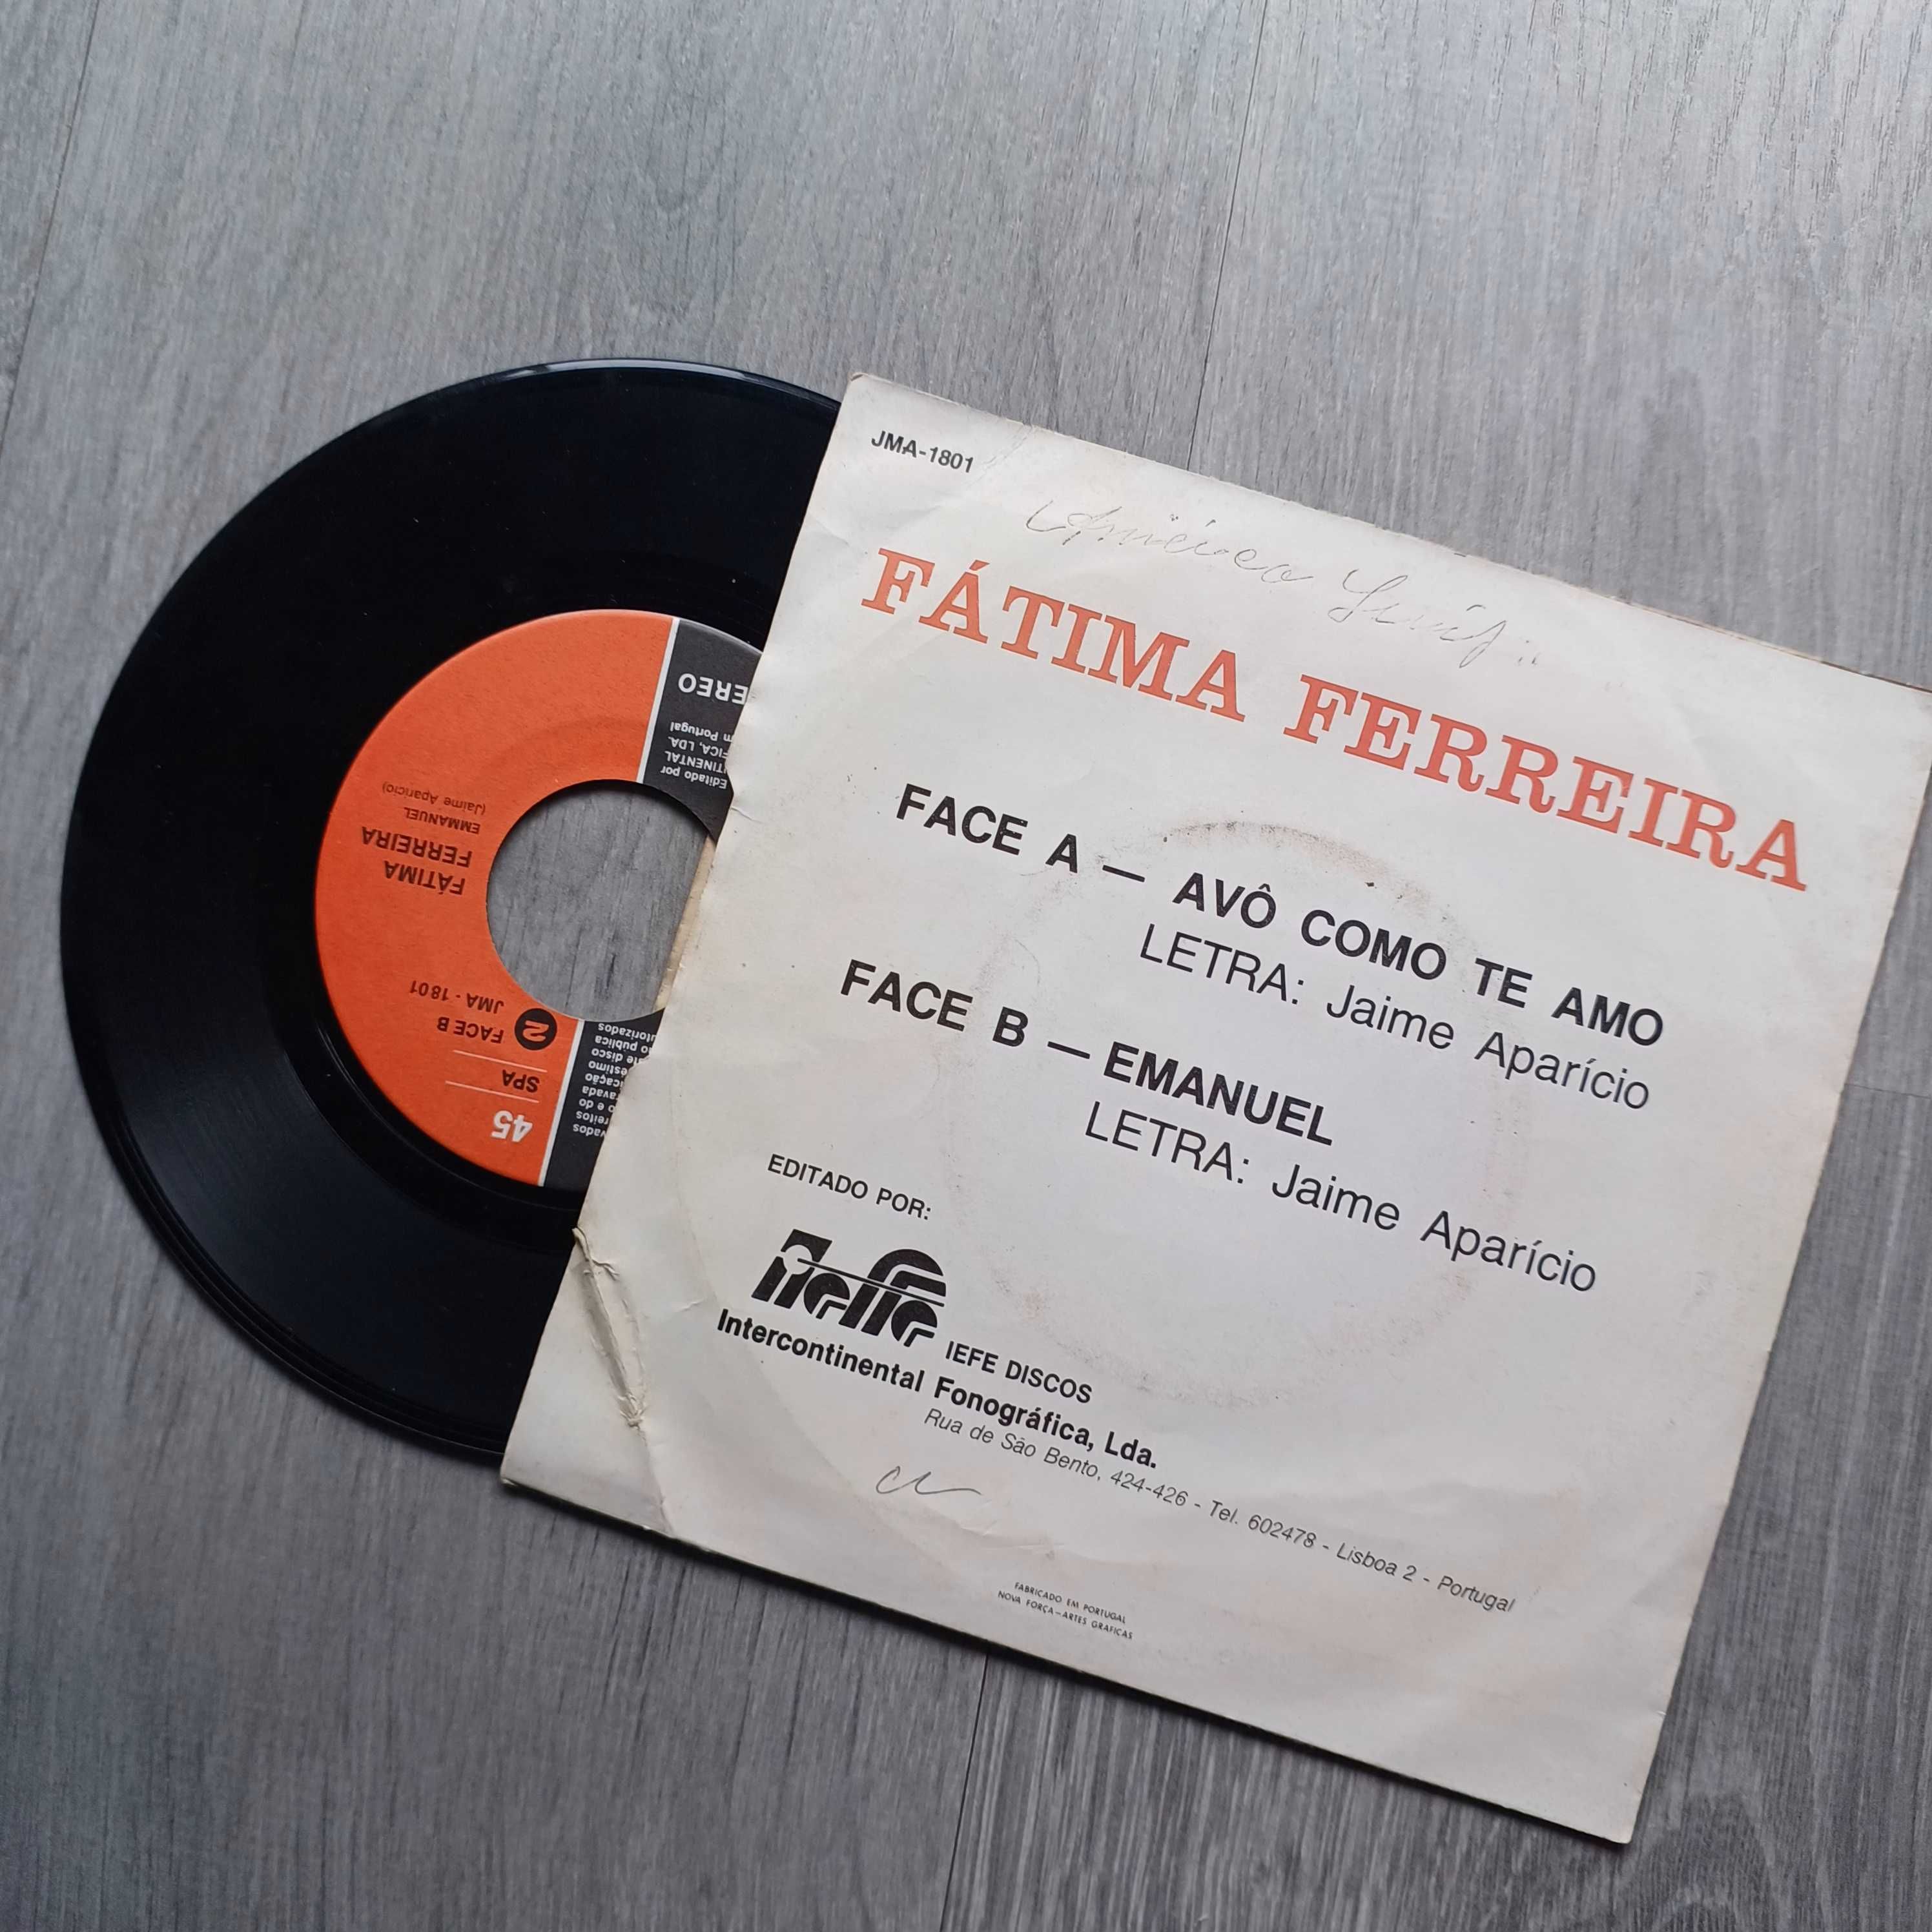 Fátima Ferreira singles (Adeus Miguel)